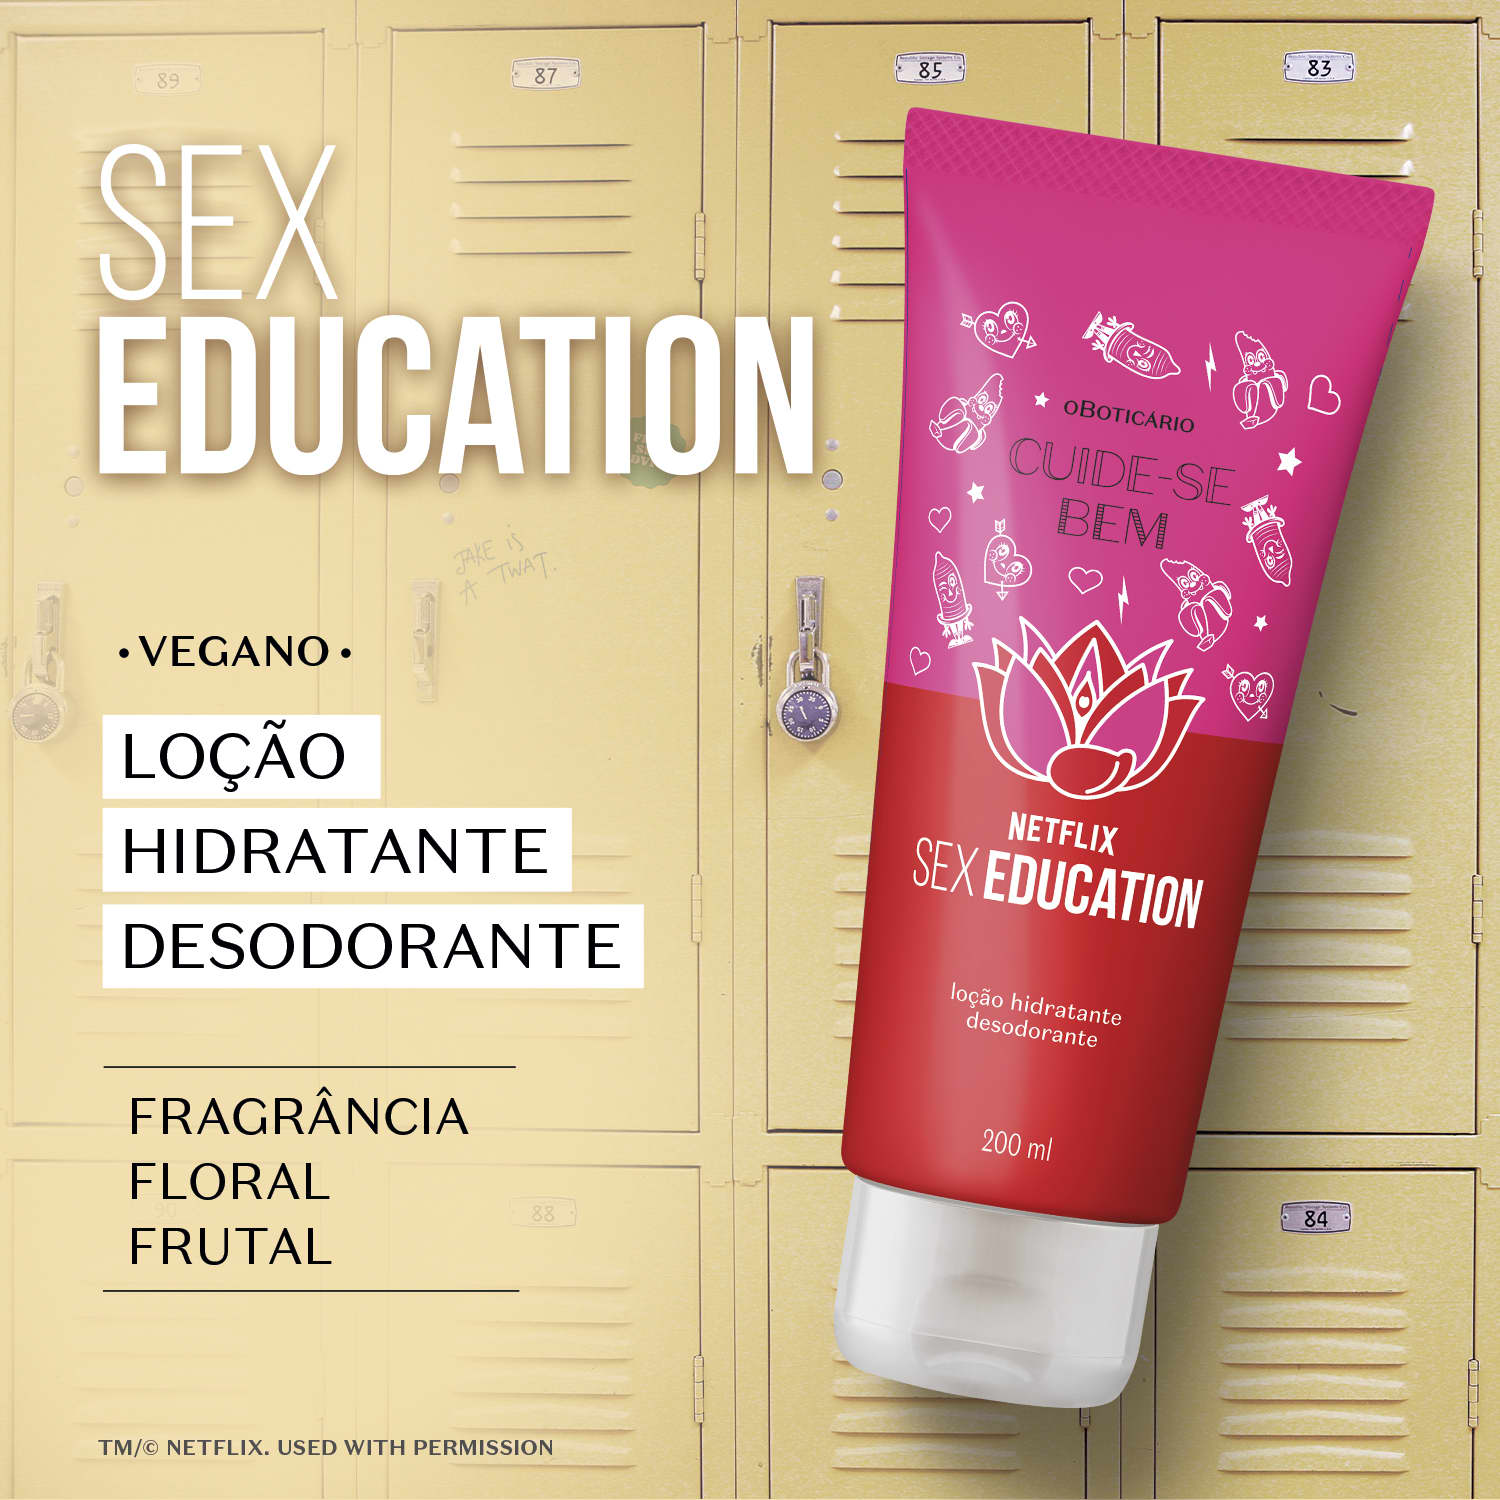 Loção Hidratante Desodorante Cuide Se Bem Netflix Sex Education 200ml O Boticário 7424